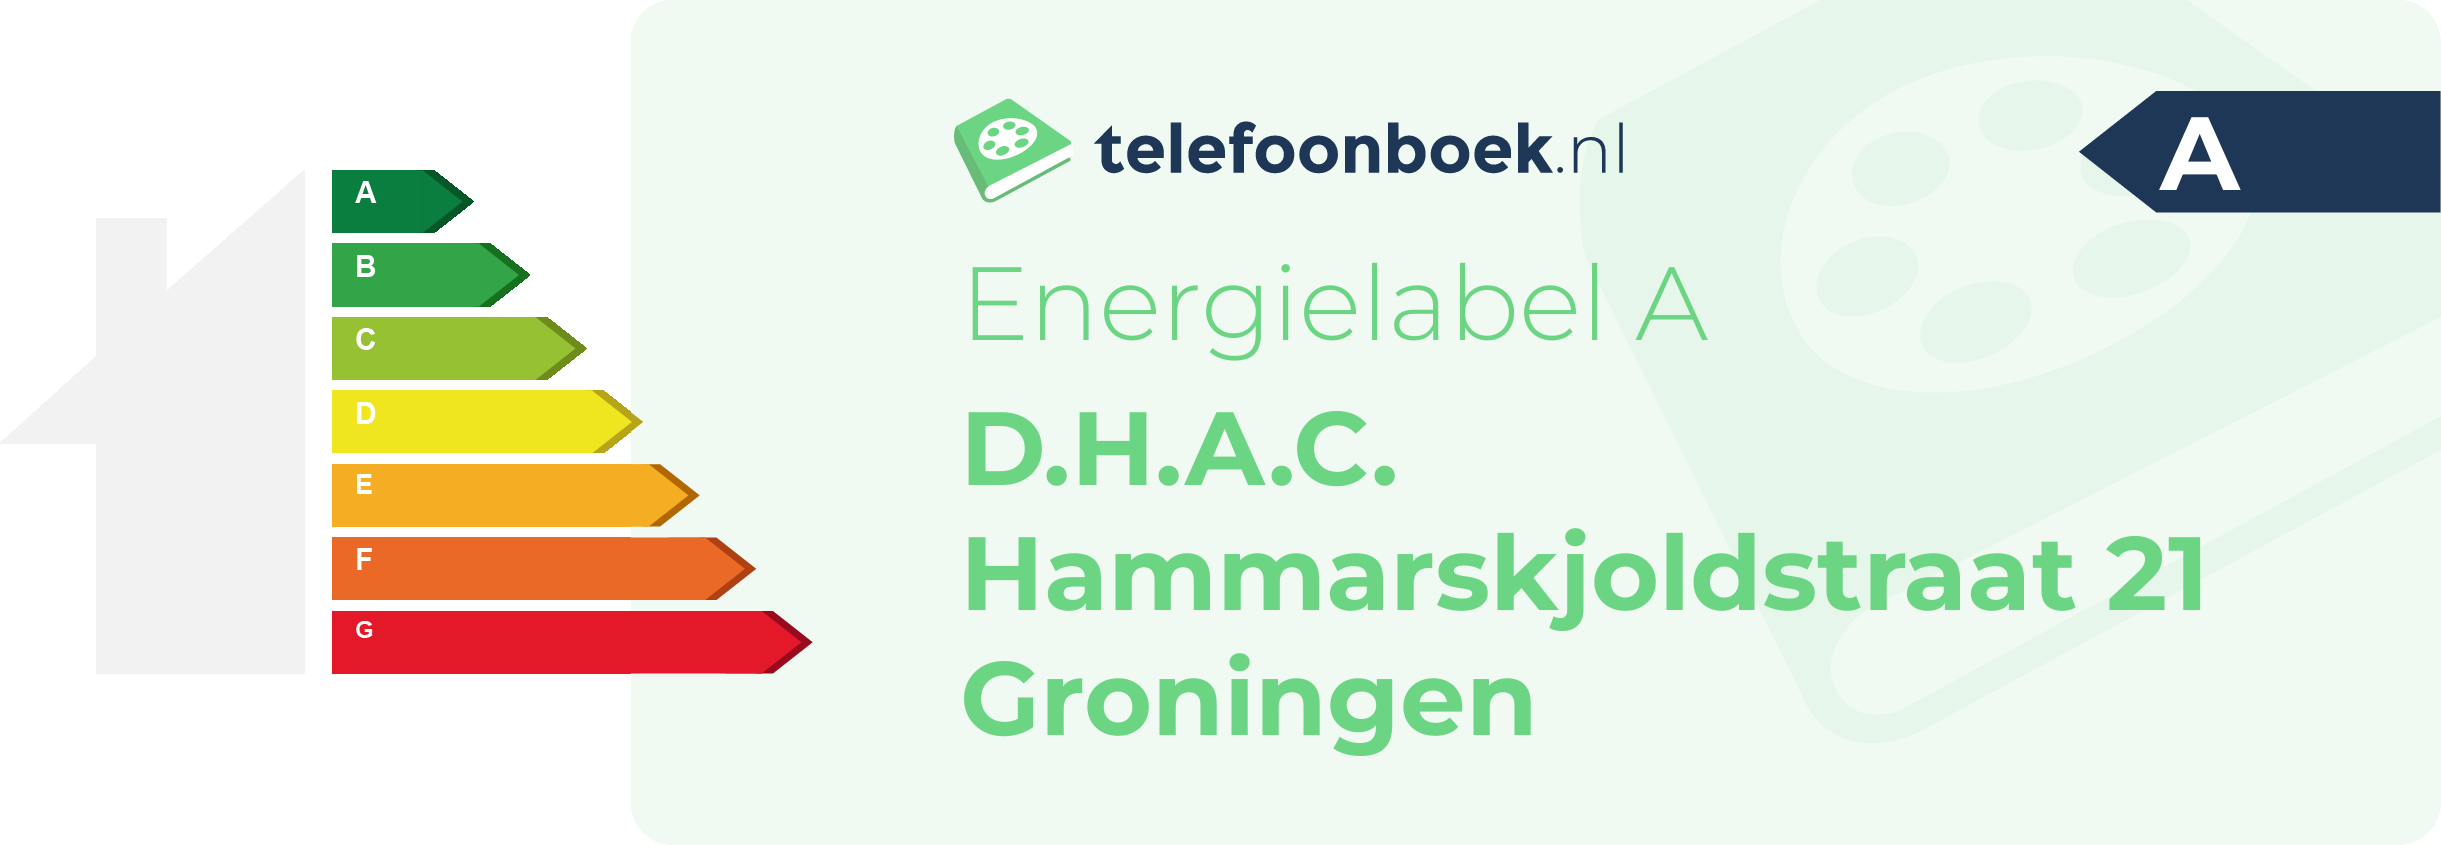 Energielabel D.H.A.C. Hammarskjoldstraat 21 Groningen